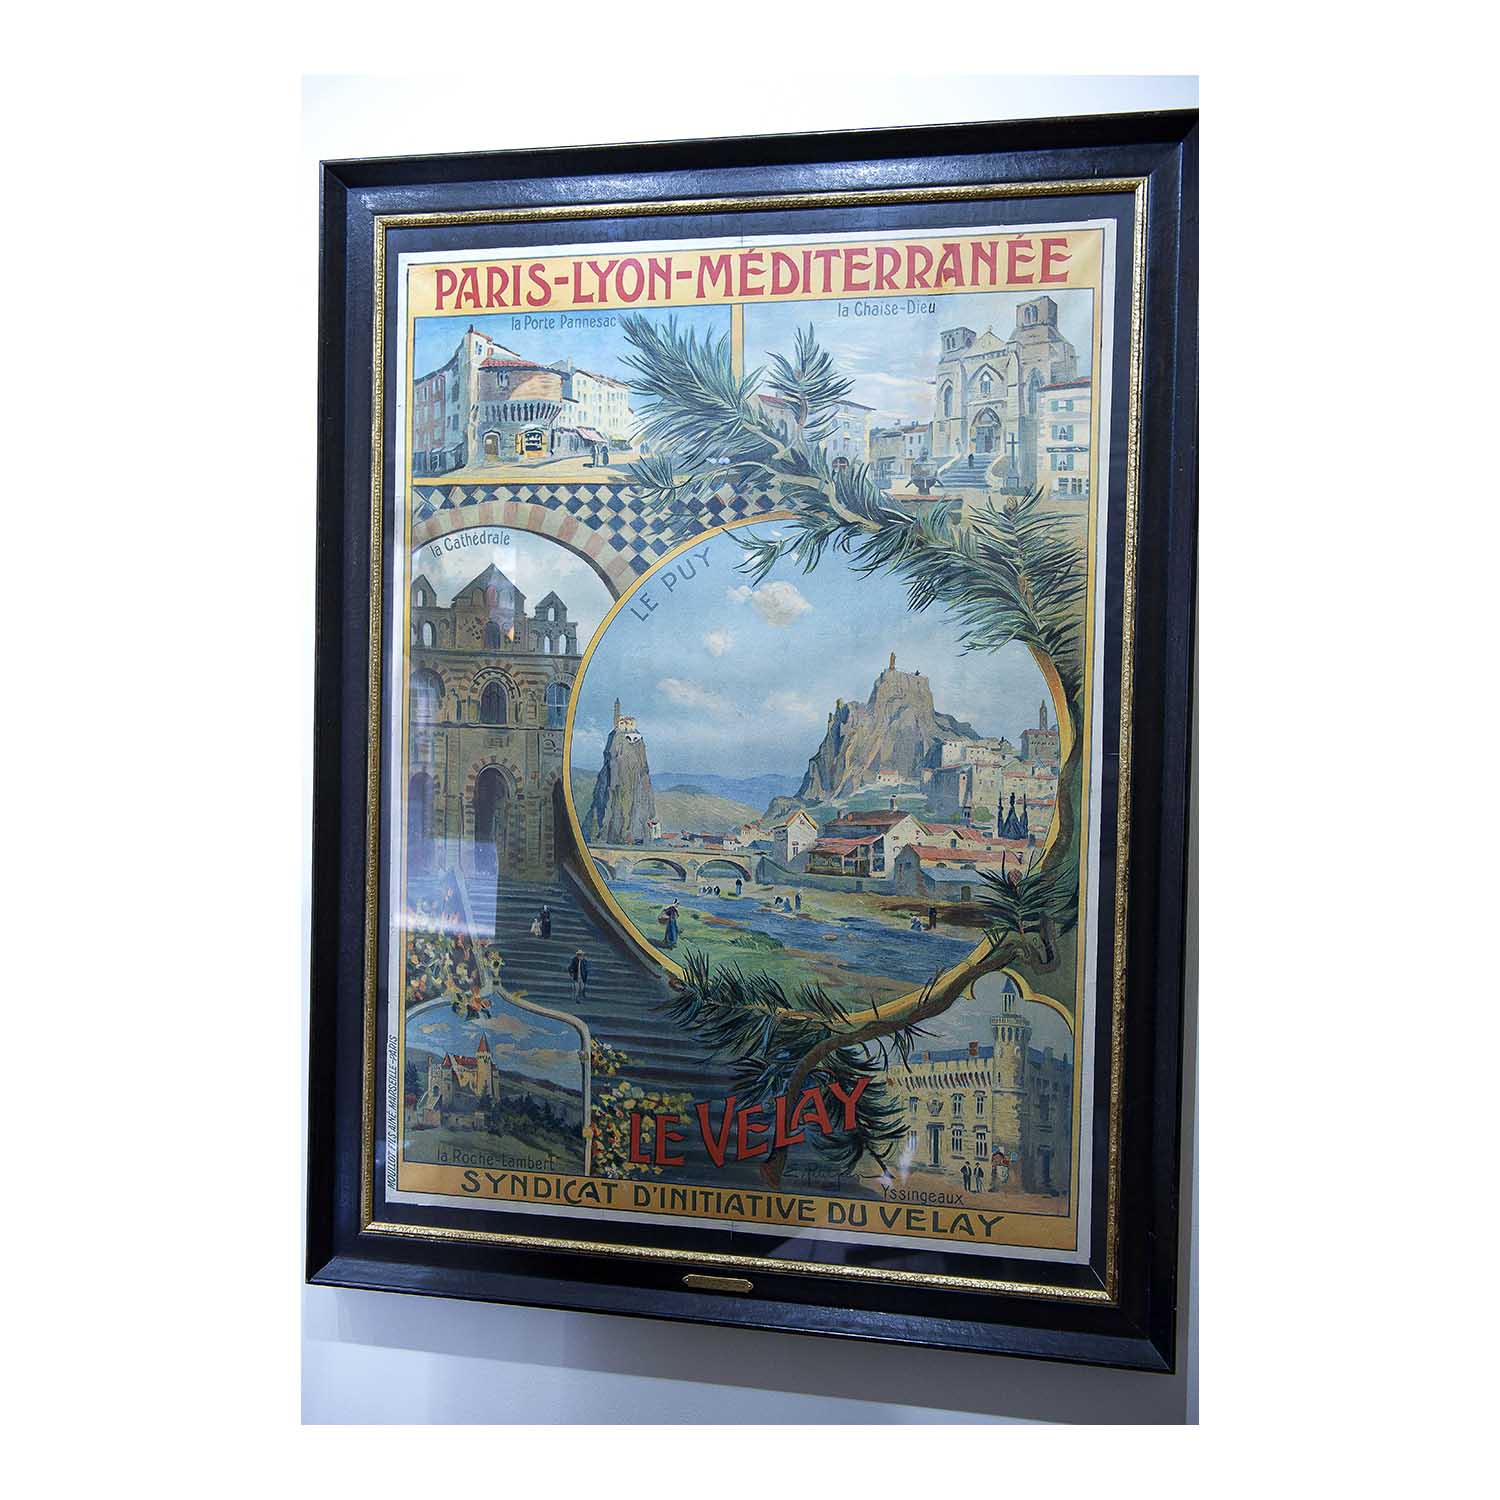 Original French travel poster for Le Velay, Edmond Marie Petitjean, Chemins de fer Paris-Lyon-Méditerranée (PLM), c. 1900. Depicts cathedral and other places in Le Puy-en-Velay 